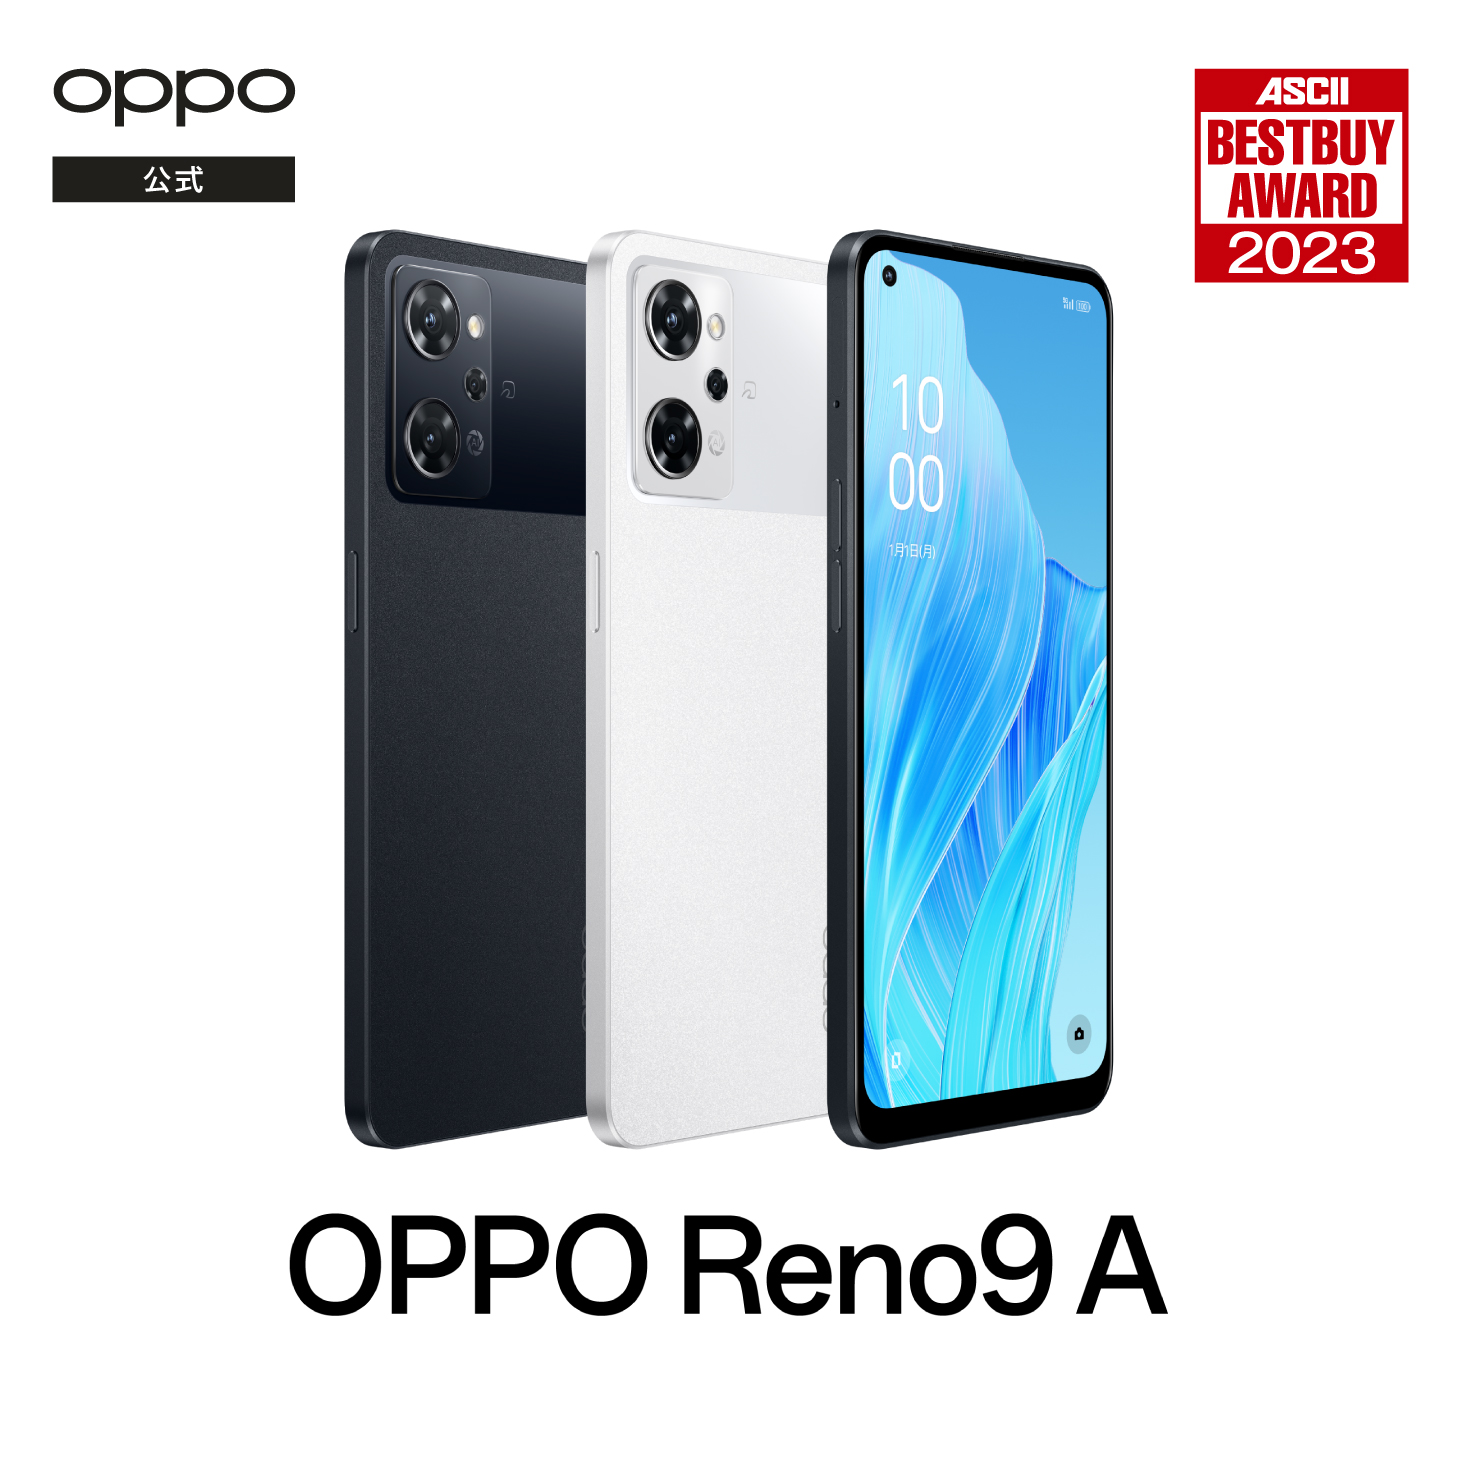 OPPO Reno9 A SIMフリー 5G スマホ Android 本体 新品 アンドロイド スマートフォン シムフリー 端末 RAM8GB 防水